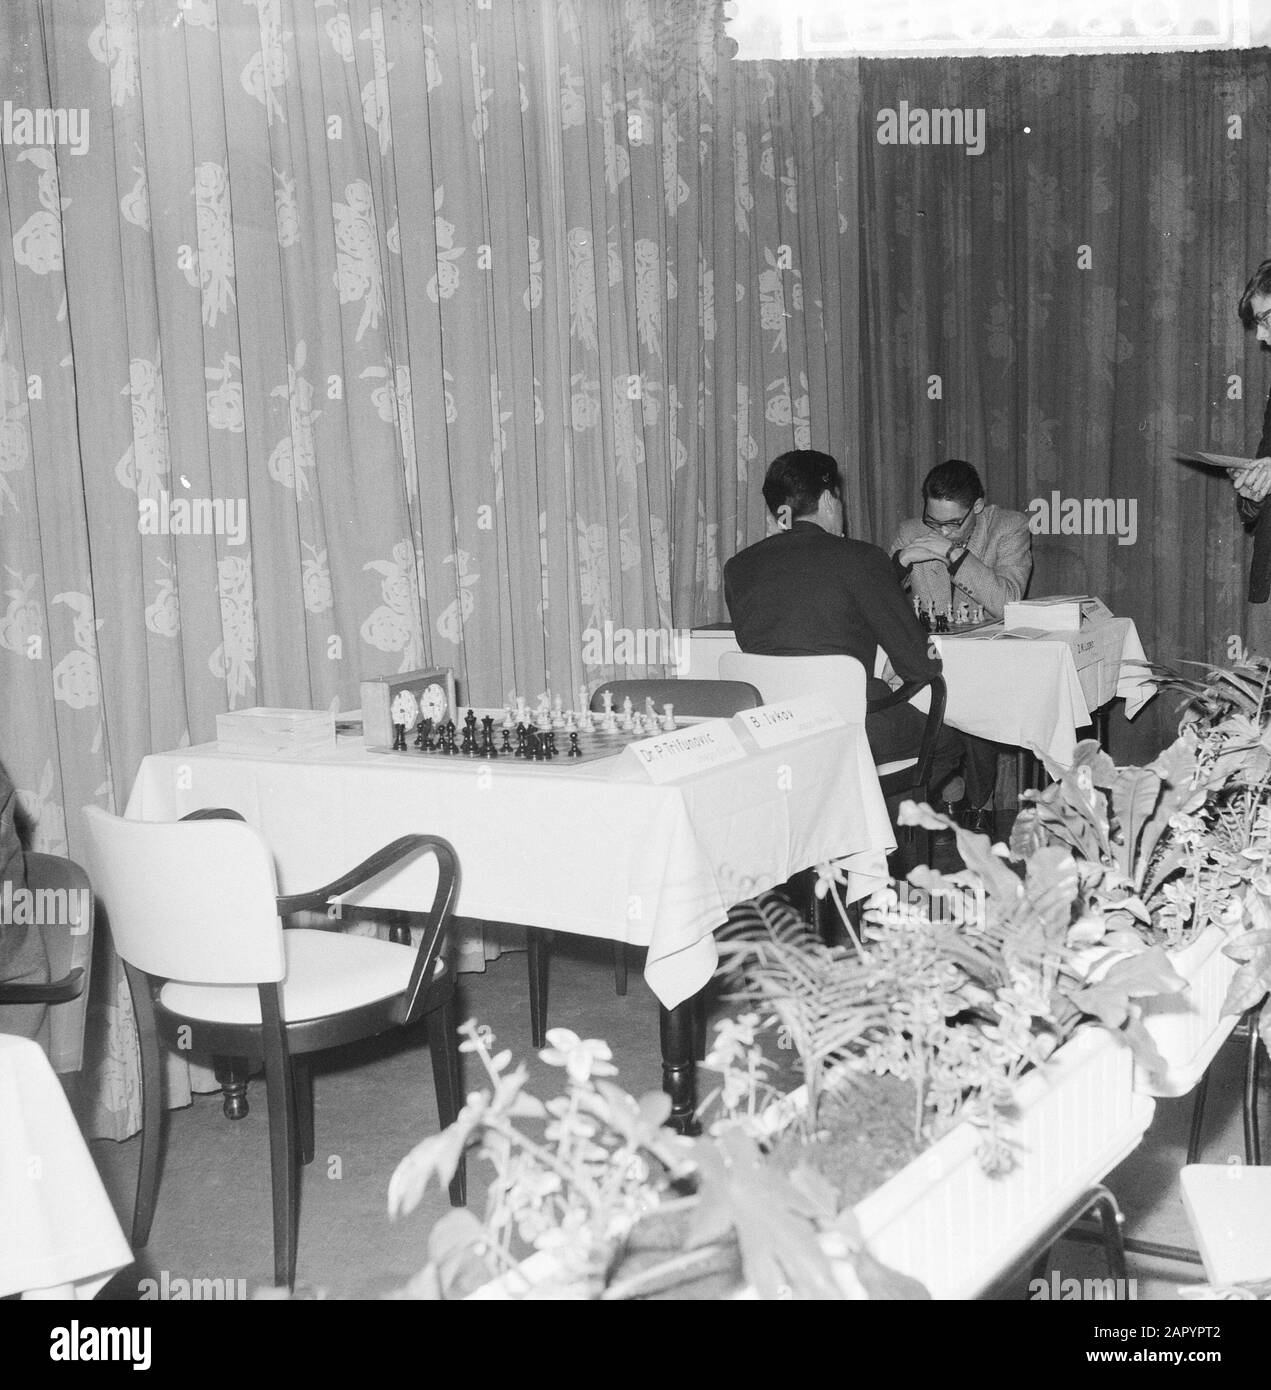 Tournoi d'échecs de zone à Berg en Dal, table de jeu vide par Dr. P. Tritunovic et B. Ivkor Date: 21 novembre 1960 lieu: Montagne et vallée mots clés: Tournois d'échecs, équipement de jeu Nom personnel: B. Ivkor, Dr. P. Tritunovic Banque D'Images